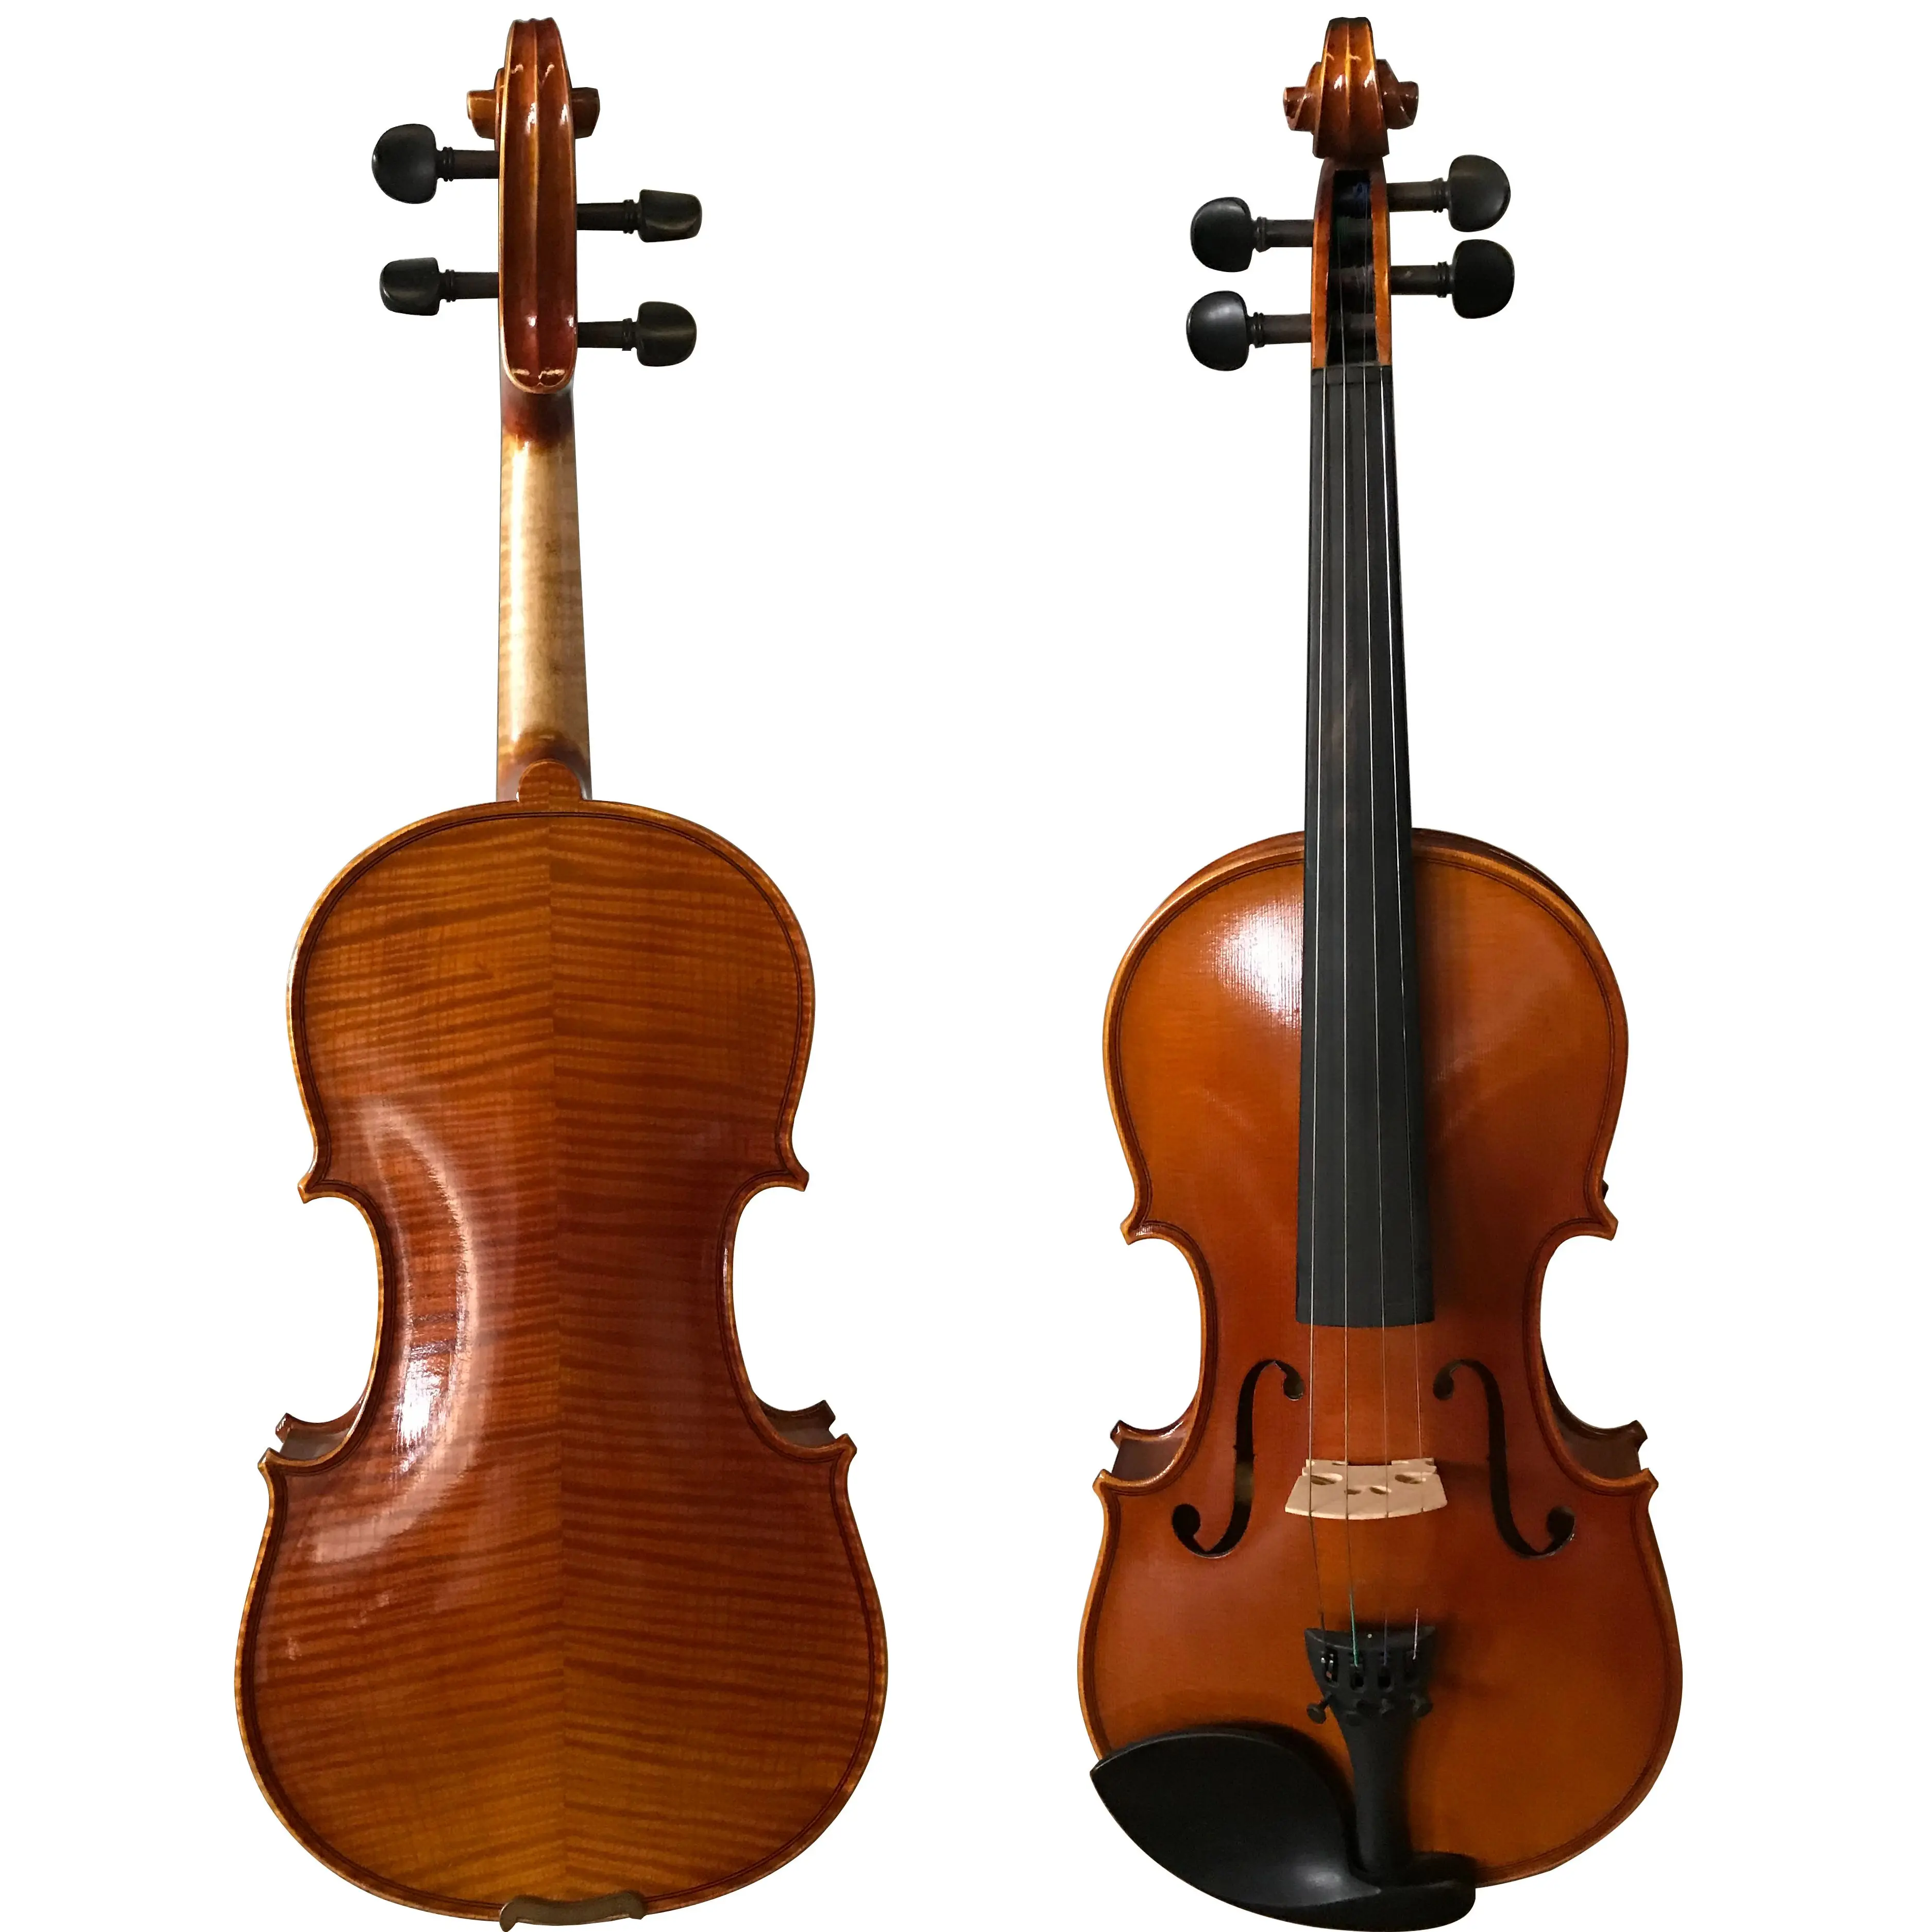 

100% ручная работа полностью европейская деревянная профессиональная скрипка 4/4 копия гесу-пушка II 1743 с бесплатным пенопластом чехол пернамб...